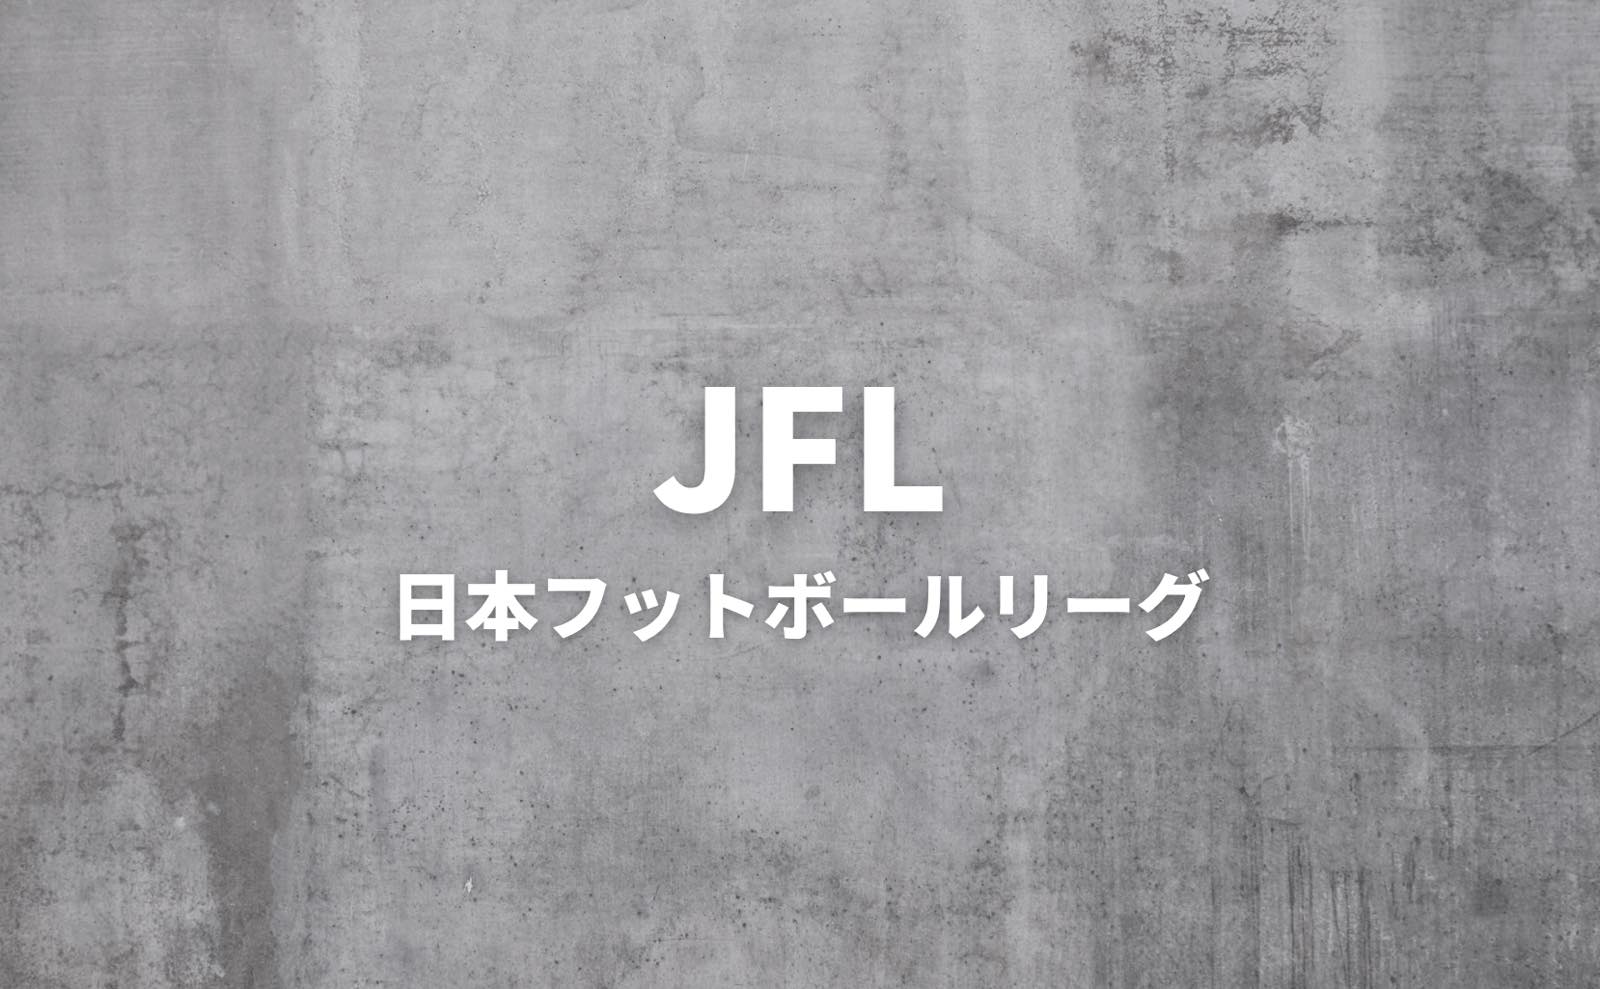 JFL（日本フットボールリーグ）